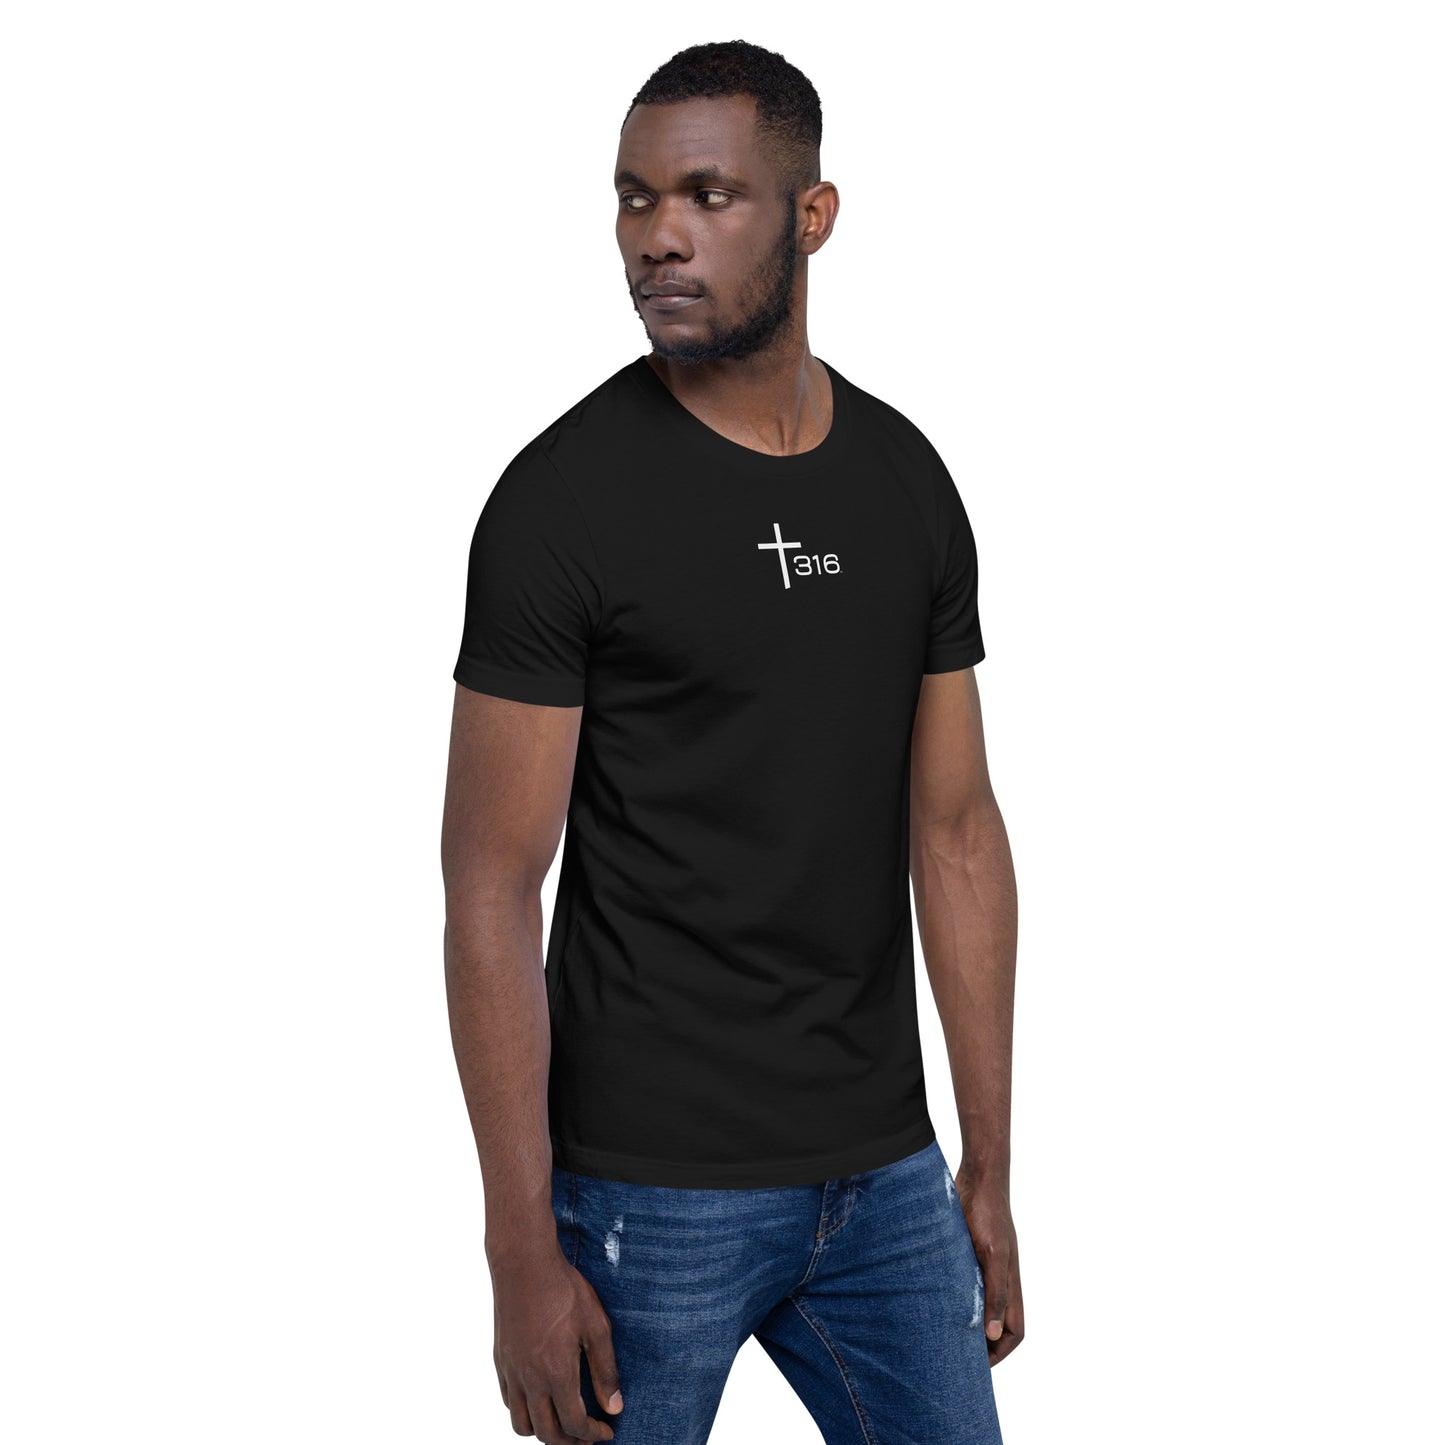 Trinity 316 ICON  T-Shirt | V2 -Black